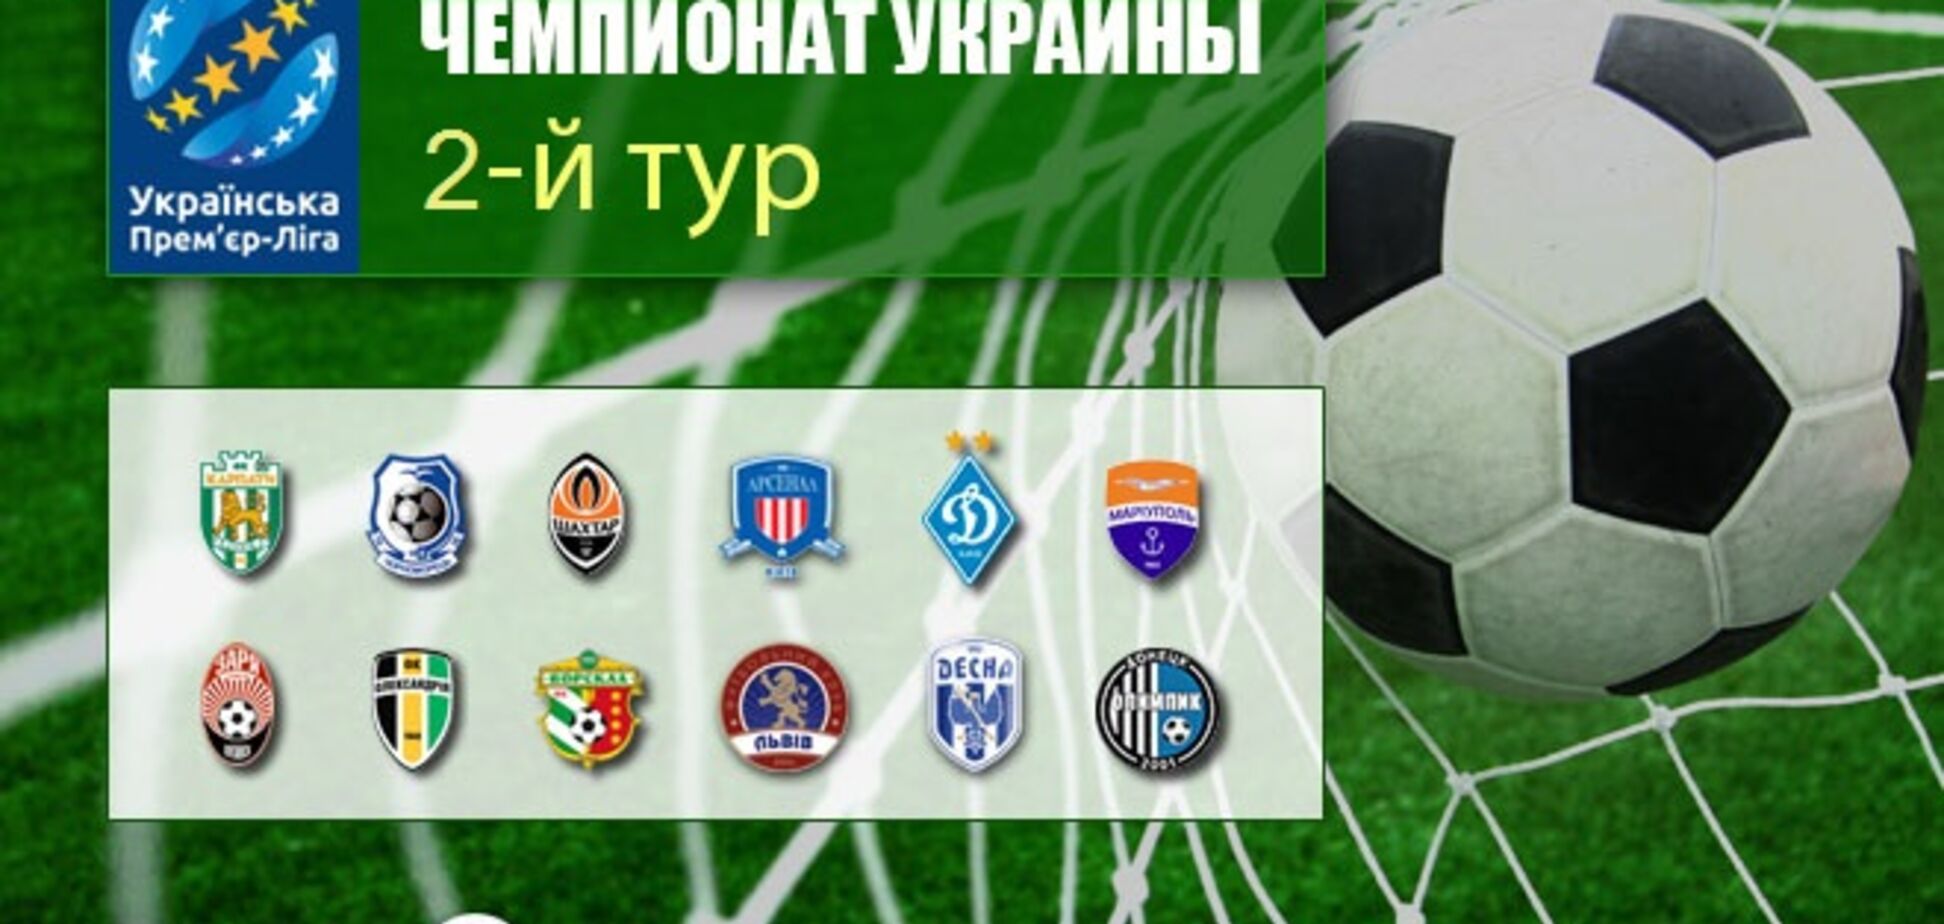 2-й тур чемпионата Украины по футболу: результаты, обзоры, таблица